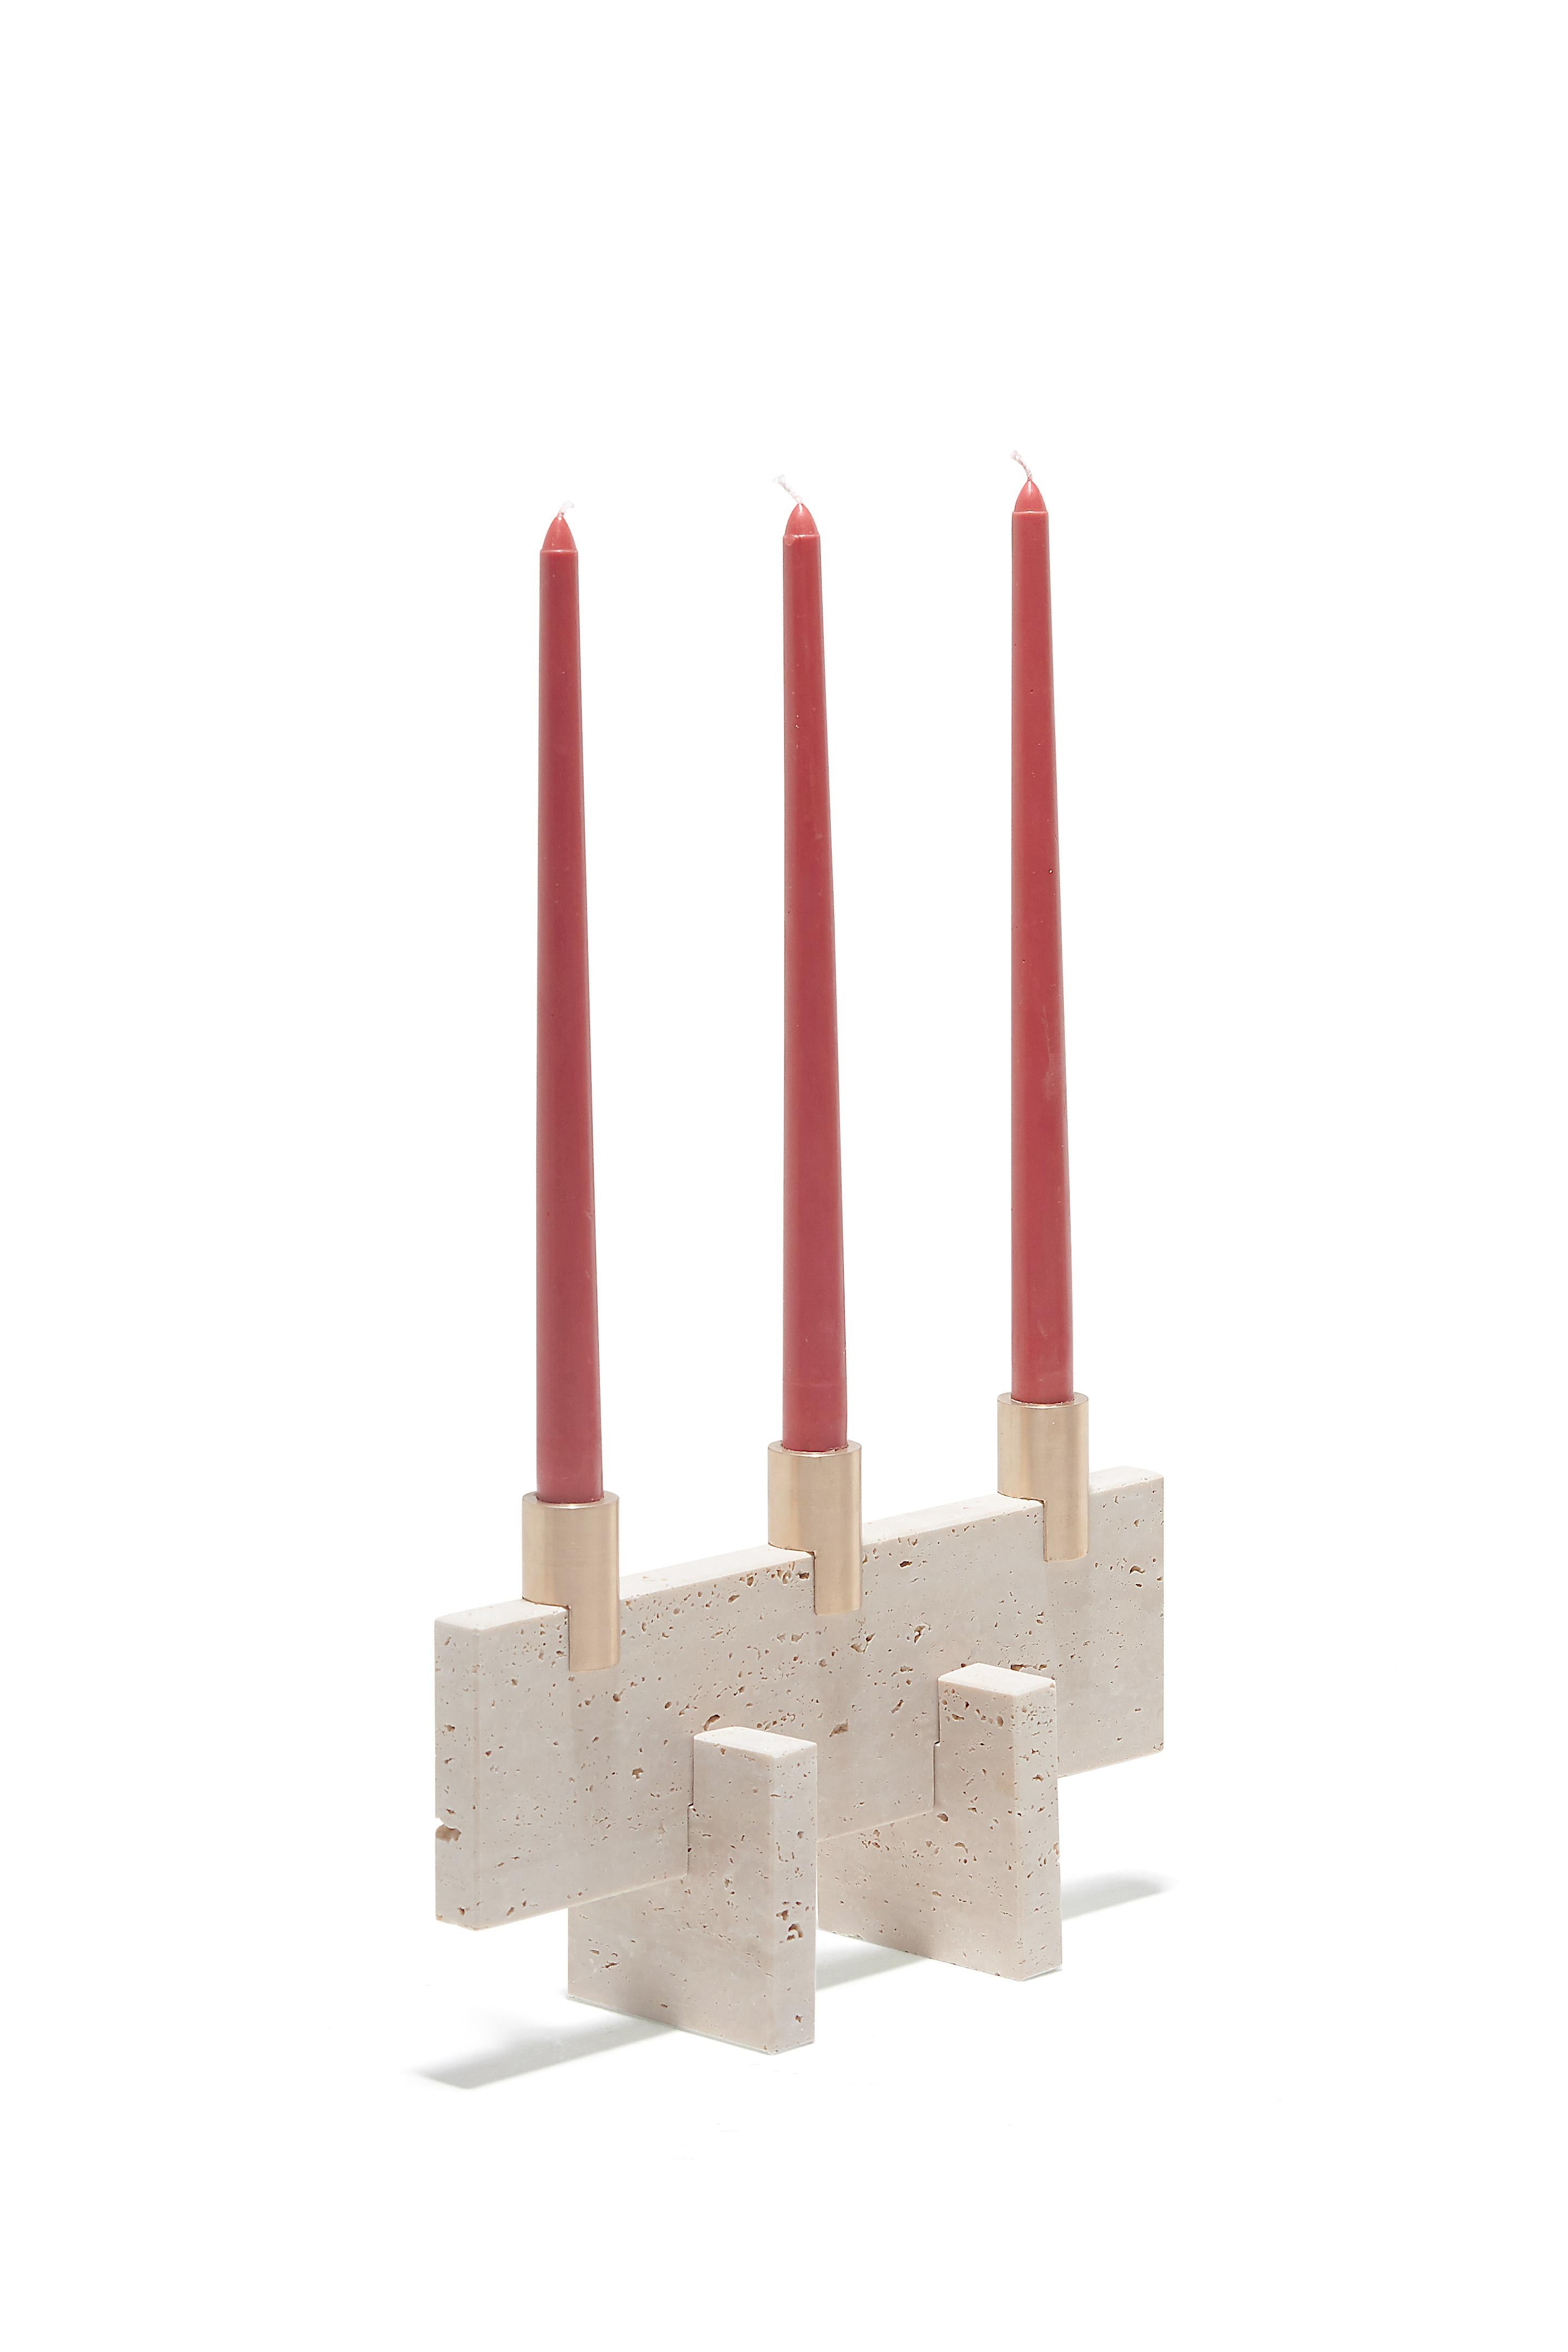 Der Fit Candle Three ist ein minimalistischer Kerzenständer aus behandeltem Travertinmarmor. Dieser Kerzenständer besteht aus drei Marmorteilen und drei massiven Messingteilen, die alle auf logische und harmonische Weise zusammengesetzt sind.
Josep